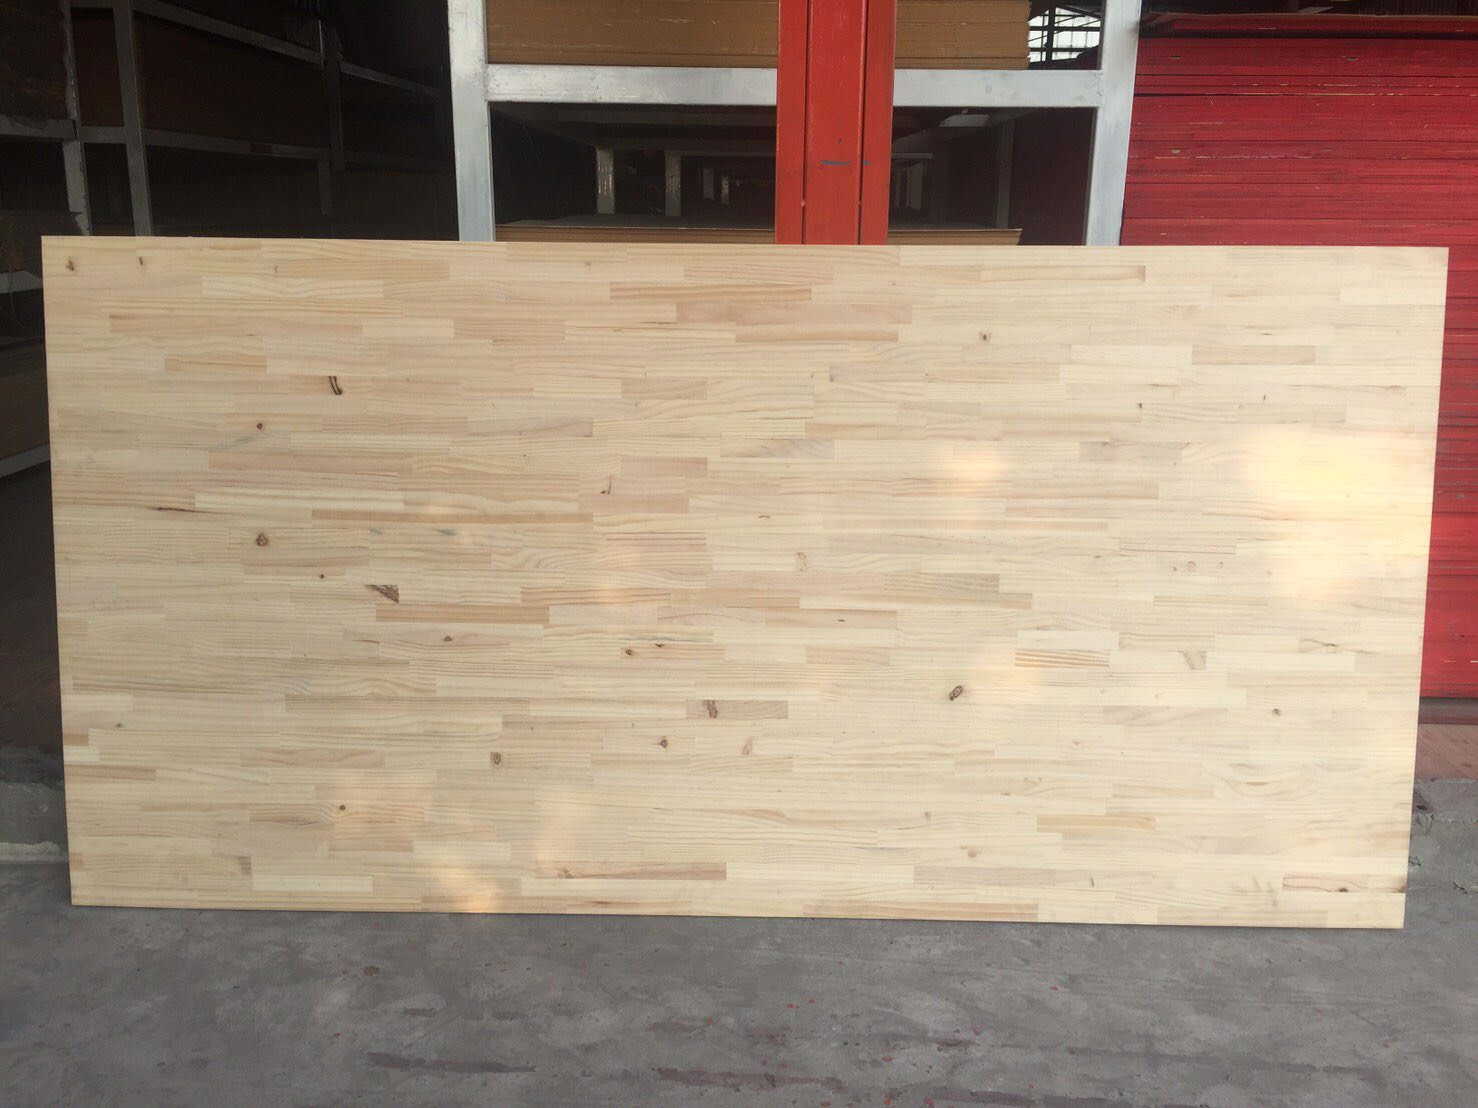 ไม้ประสาน jointed wood 1.22cm x 2.44